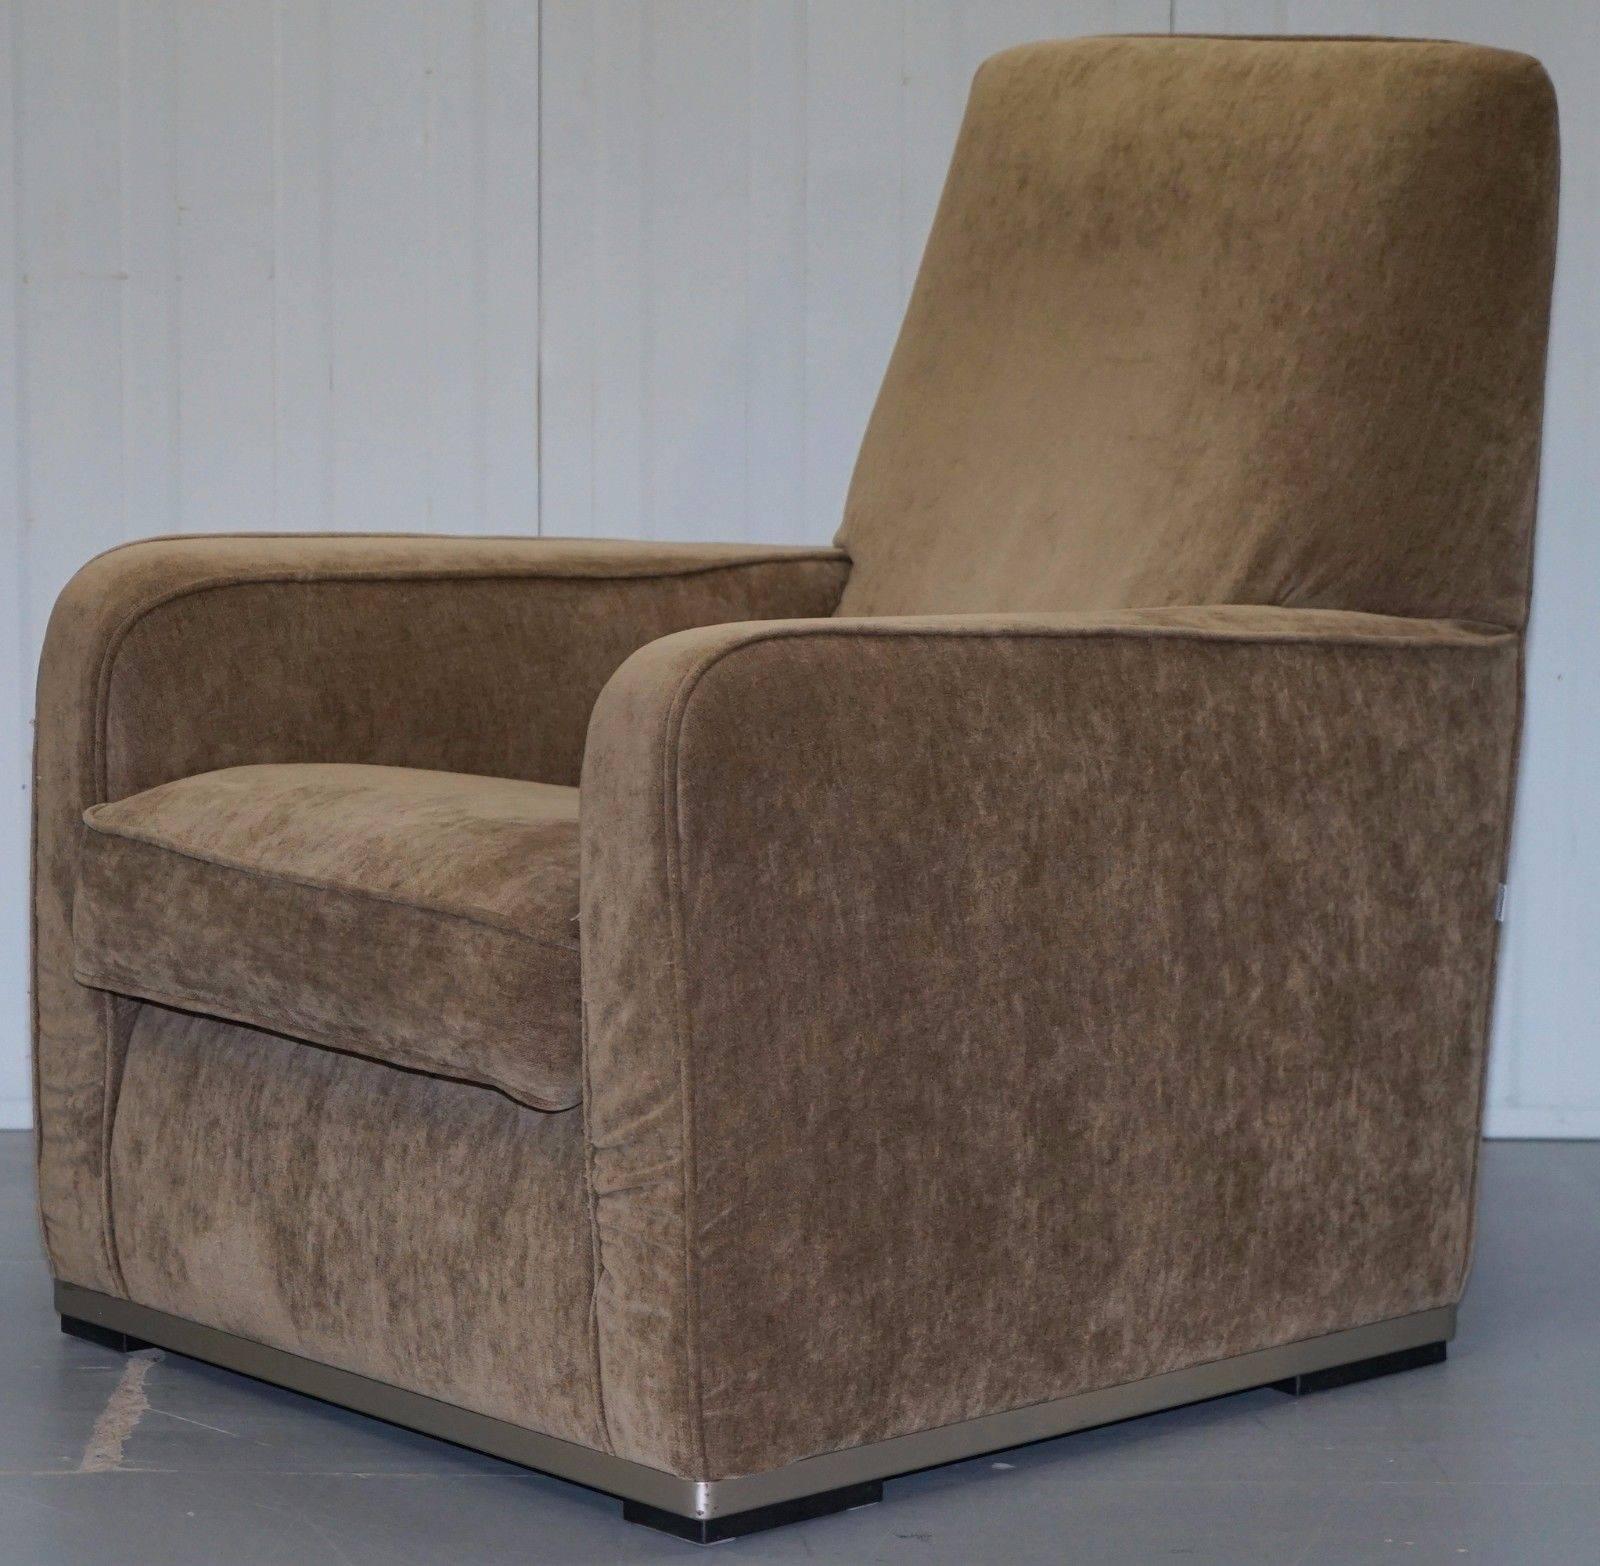 Nous sommes ravis d'offrir à la vente cette superbe paire de fauteuils à haut dossier de B&B Italia, fabriqués à la main en Italie, Maxalto Imprimatur, conçus par Antonio Citterio, dont le prix de vente conseillé est de £6000.

Les chaises sont en